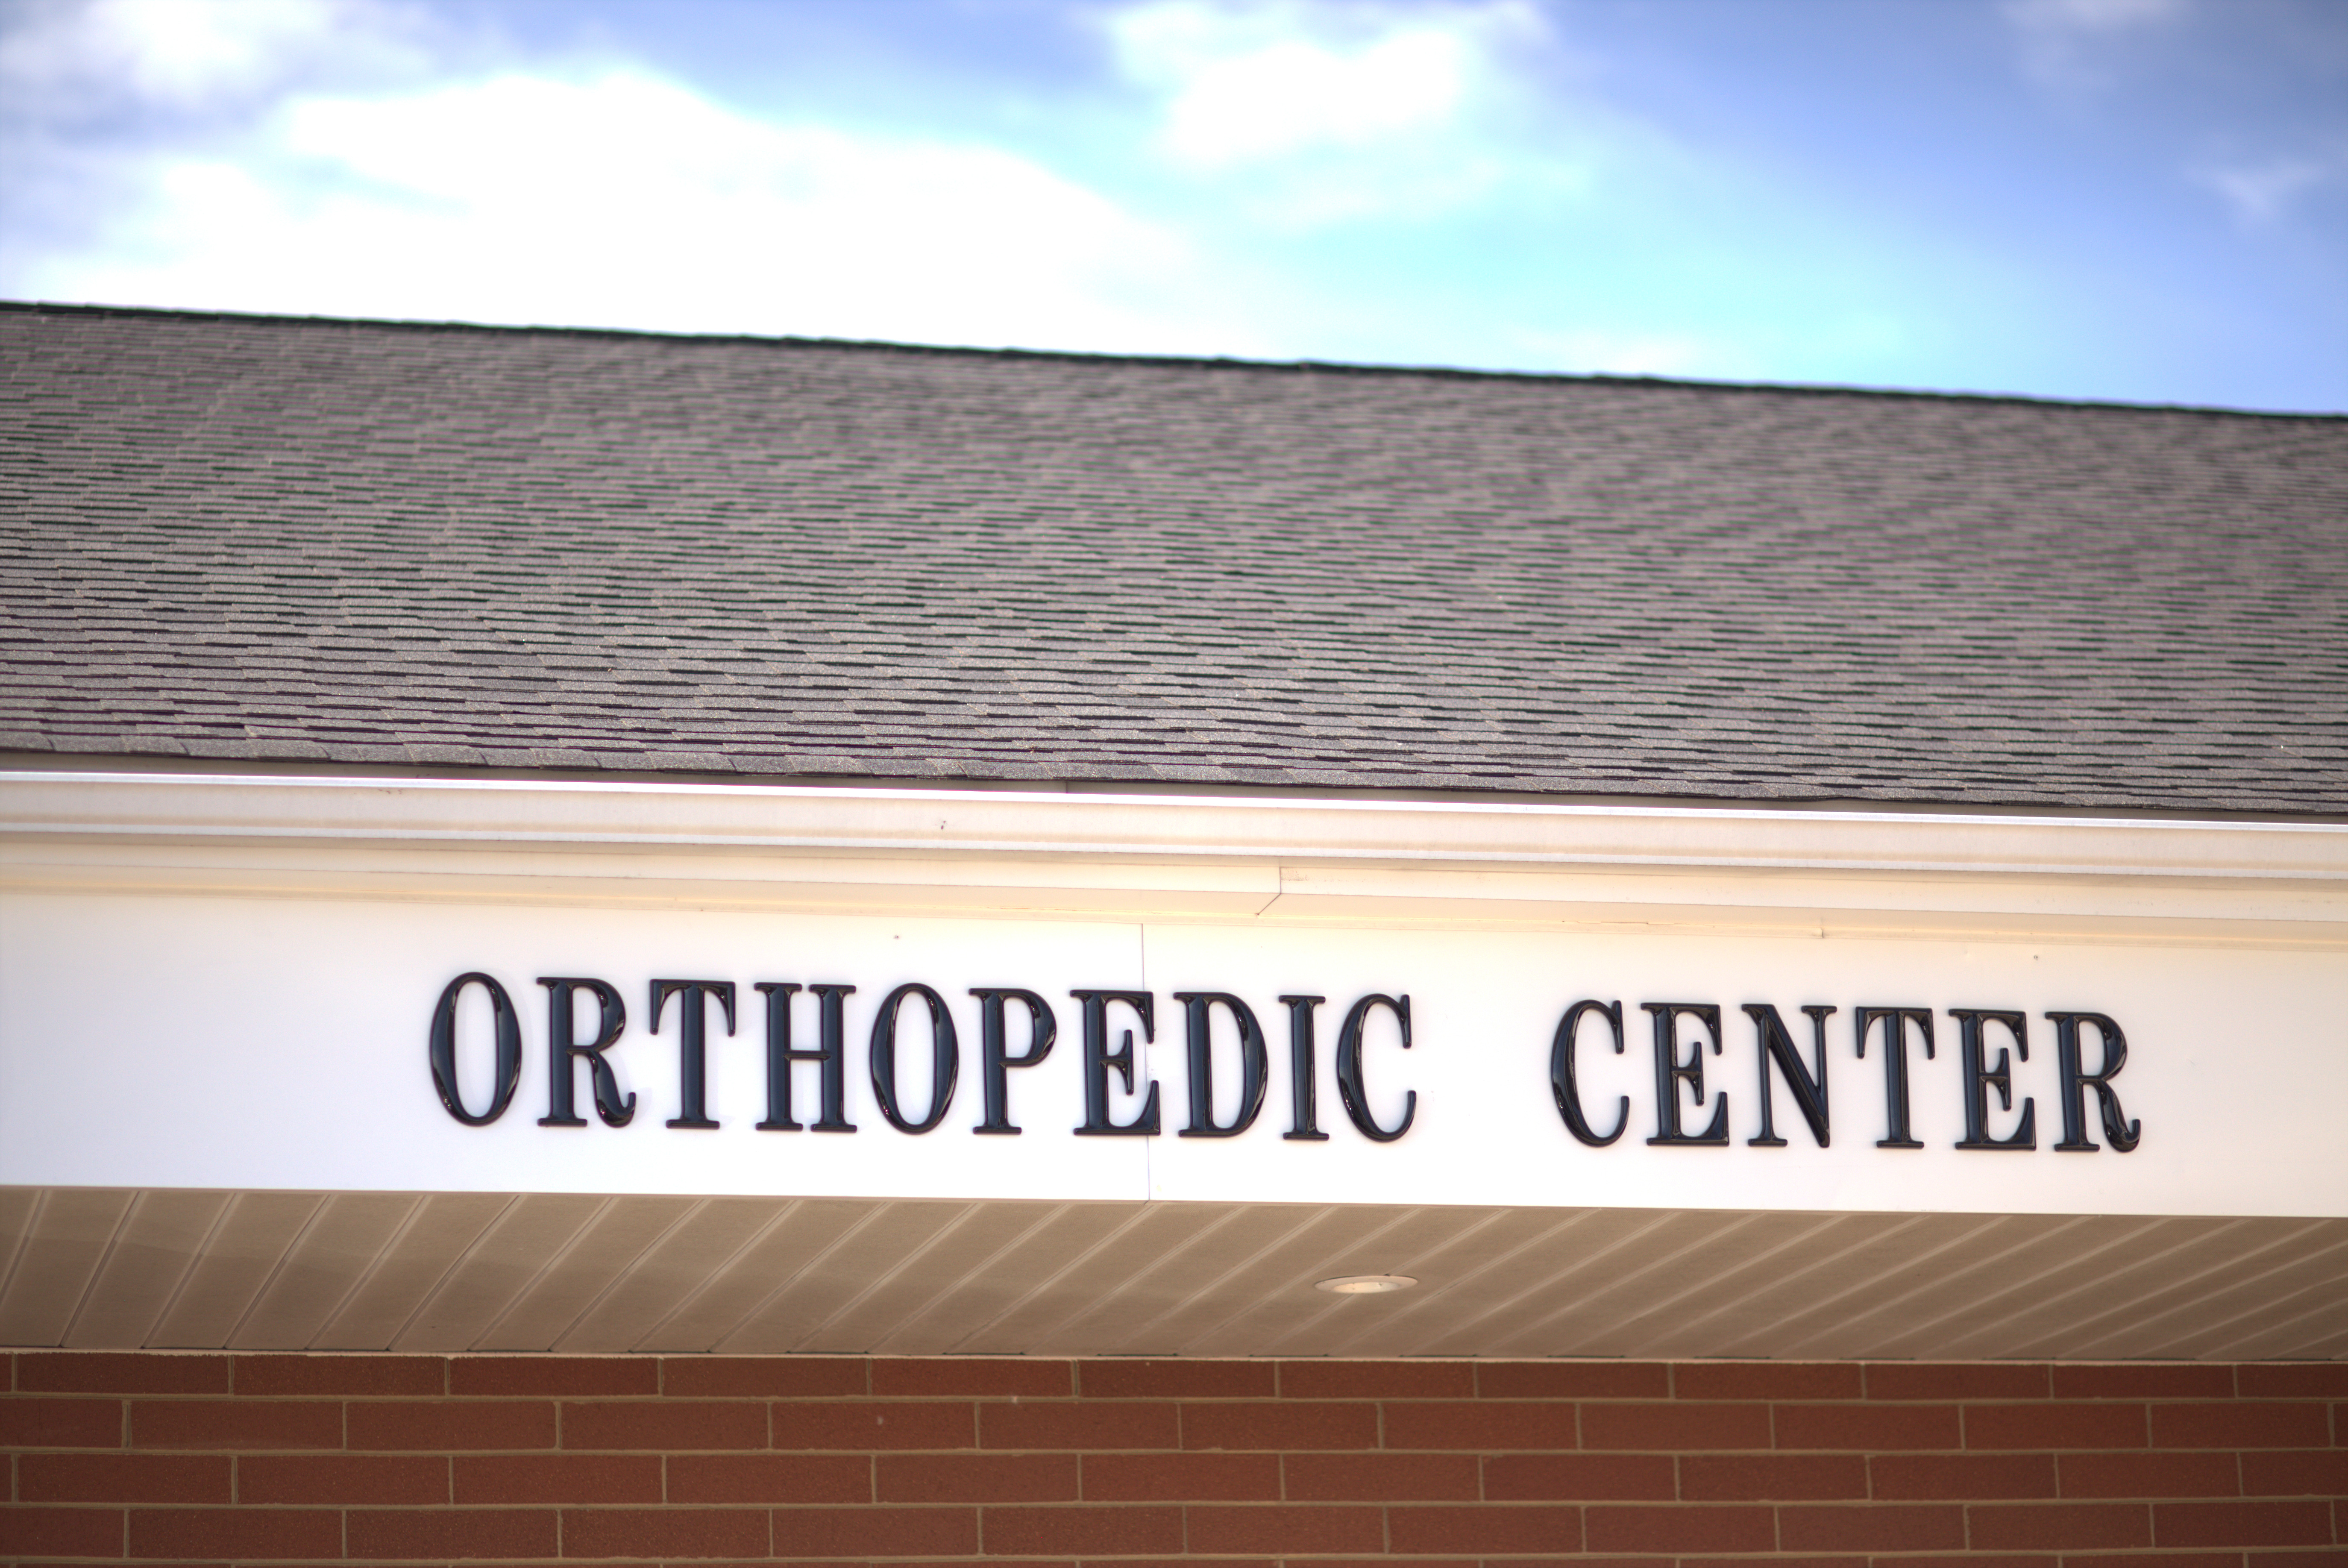 Orthopedic Center above fascia exterior